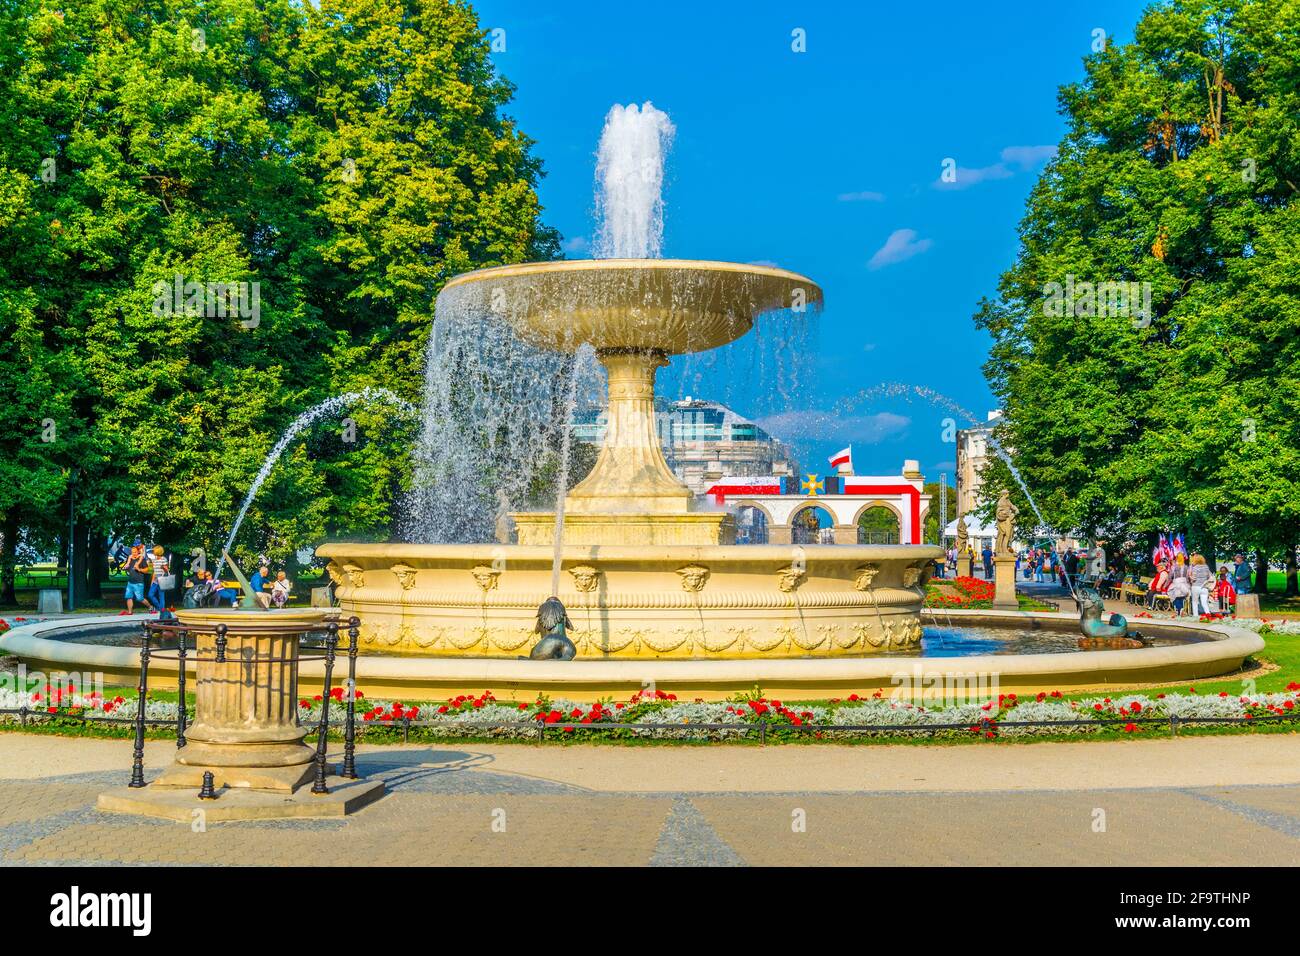 fountain in Ogród Saski - Saxon Garden, the oldest public park in Warsaw, Poland Stock Photo